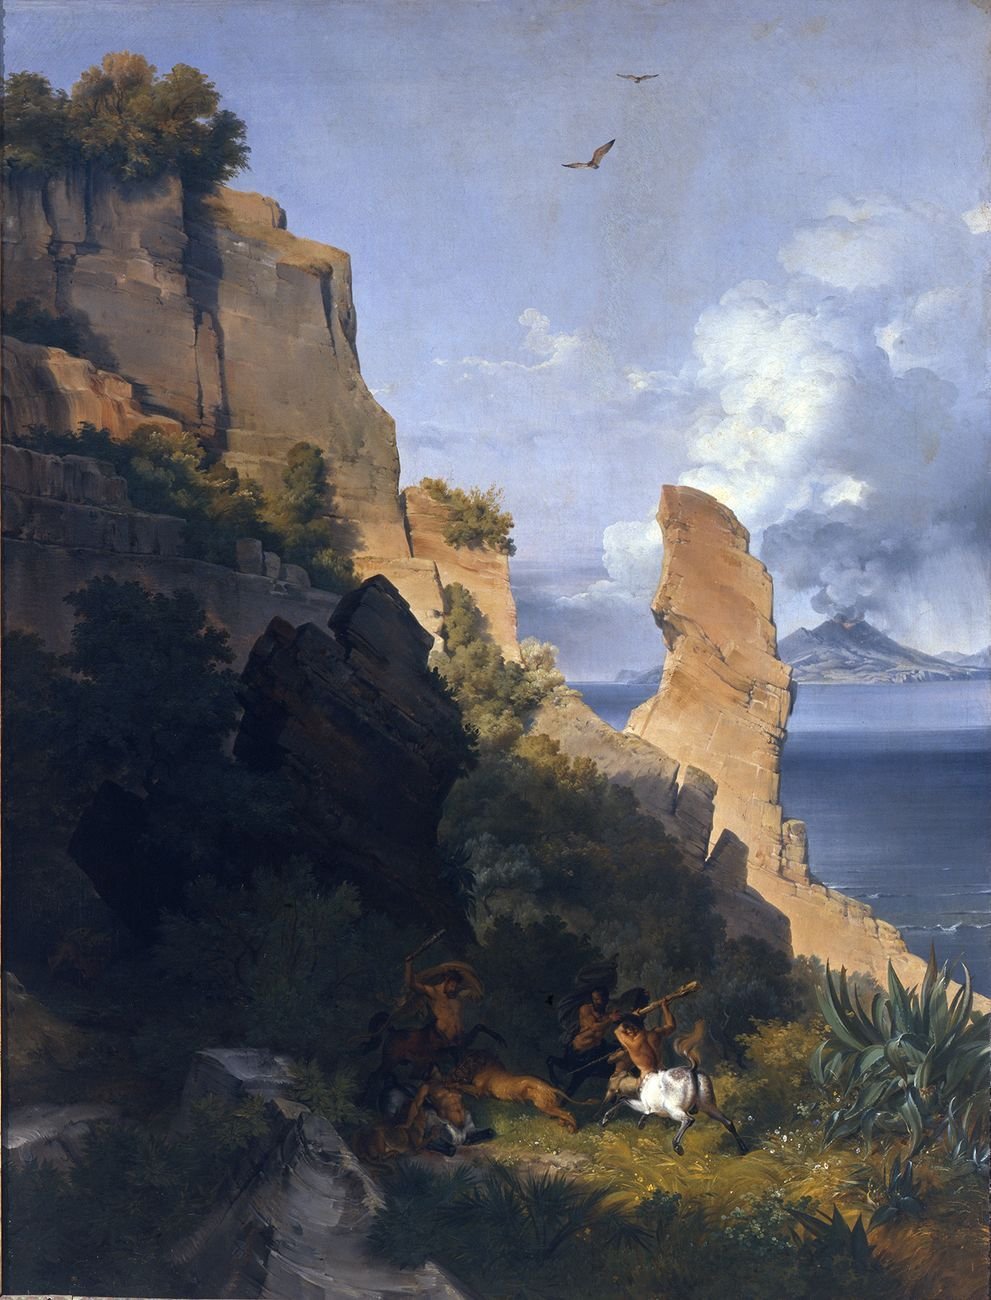 Lancelot Théodore Turpin de Crisse, Rocce sul mare con centauri, 1836. Venezia, Gallerie dell’Accademia